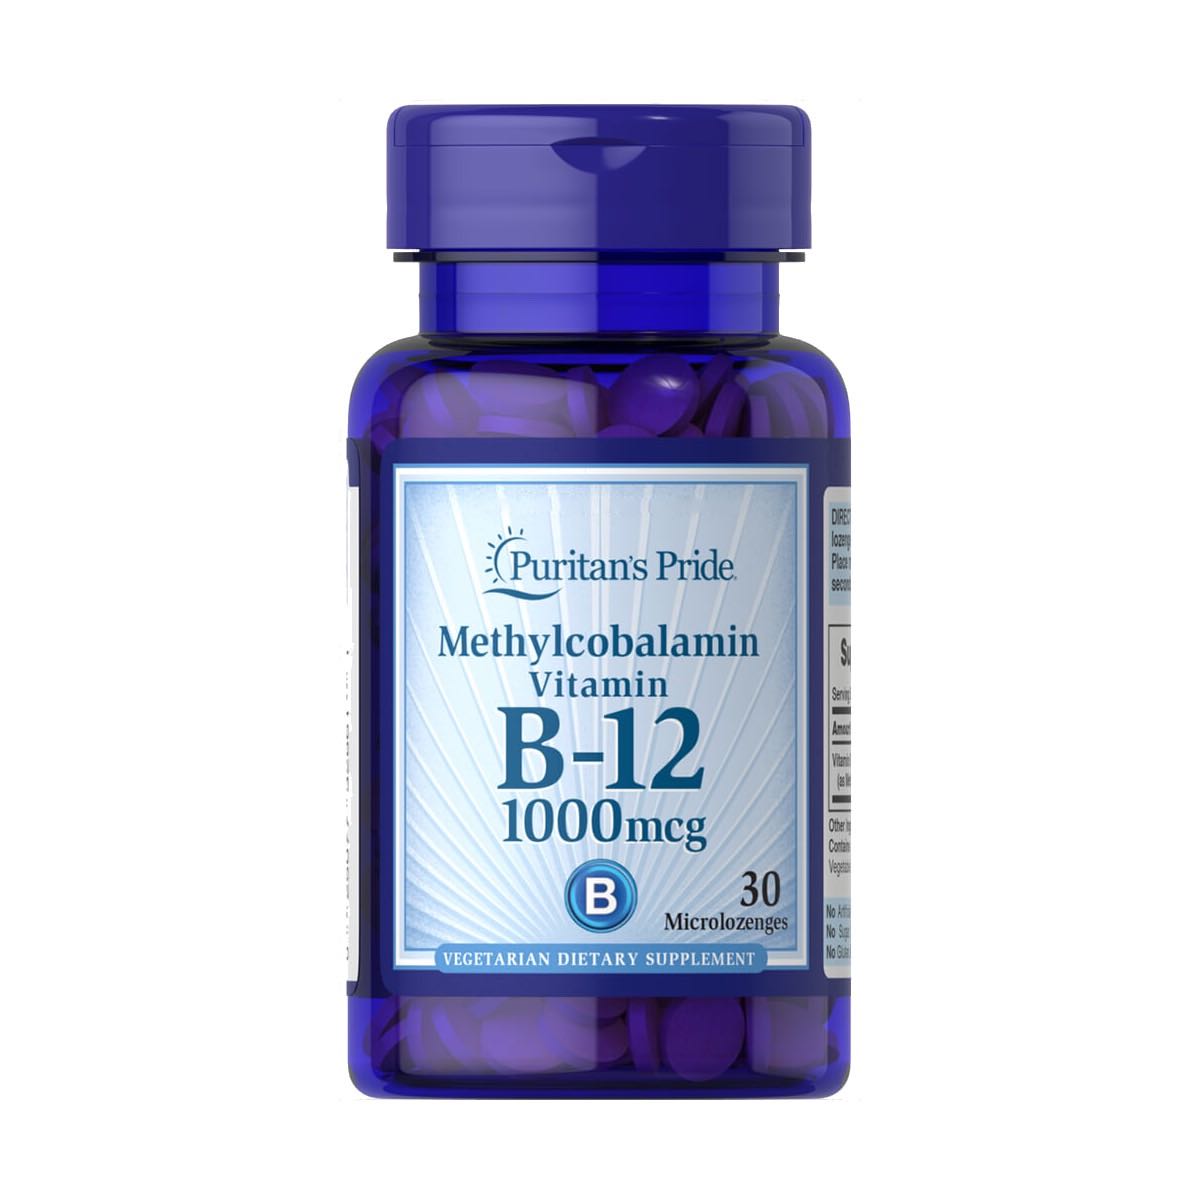 Puritan's Pride, Methylcobalamin Vitamin B-12 1000 mcg